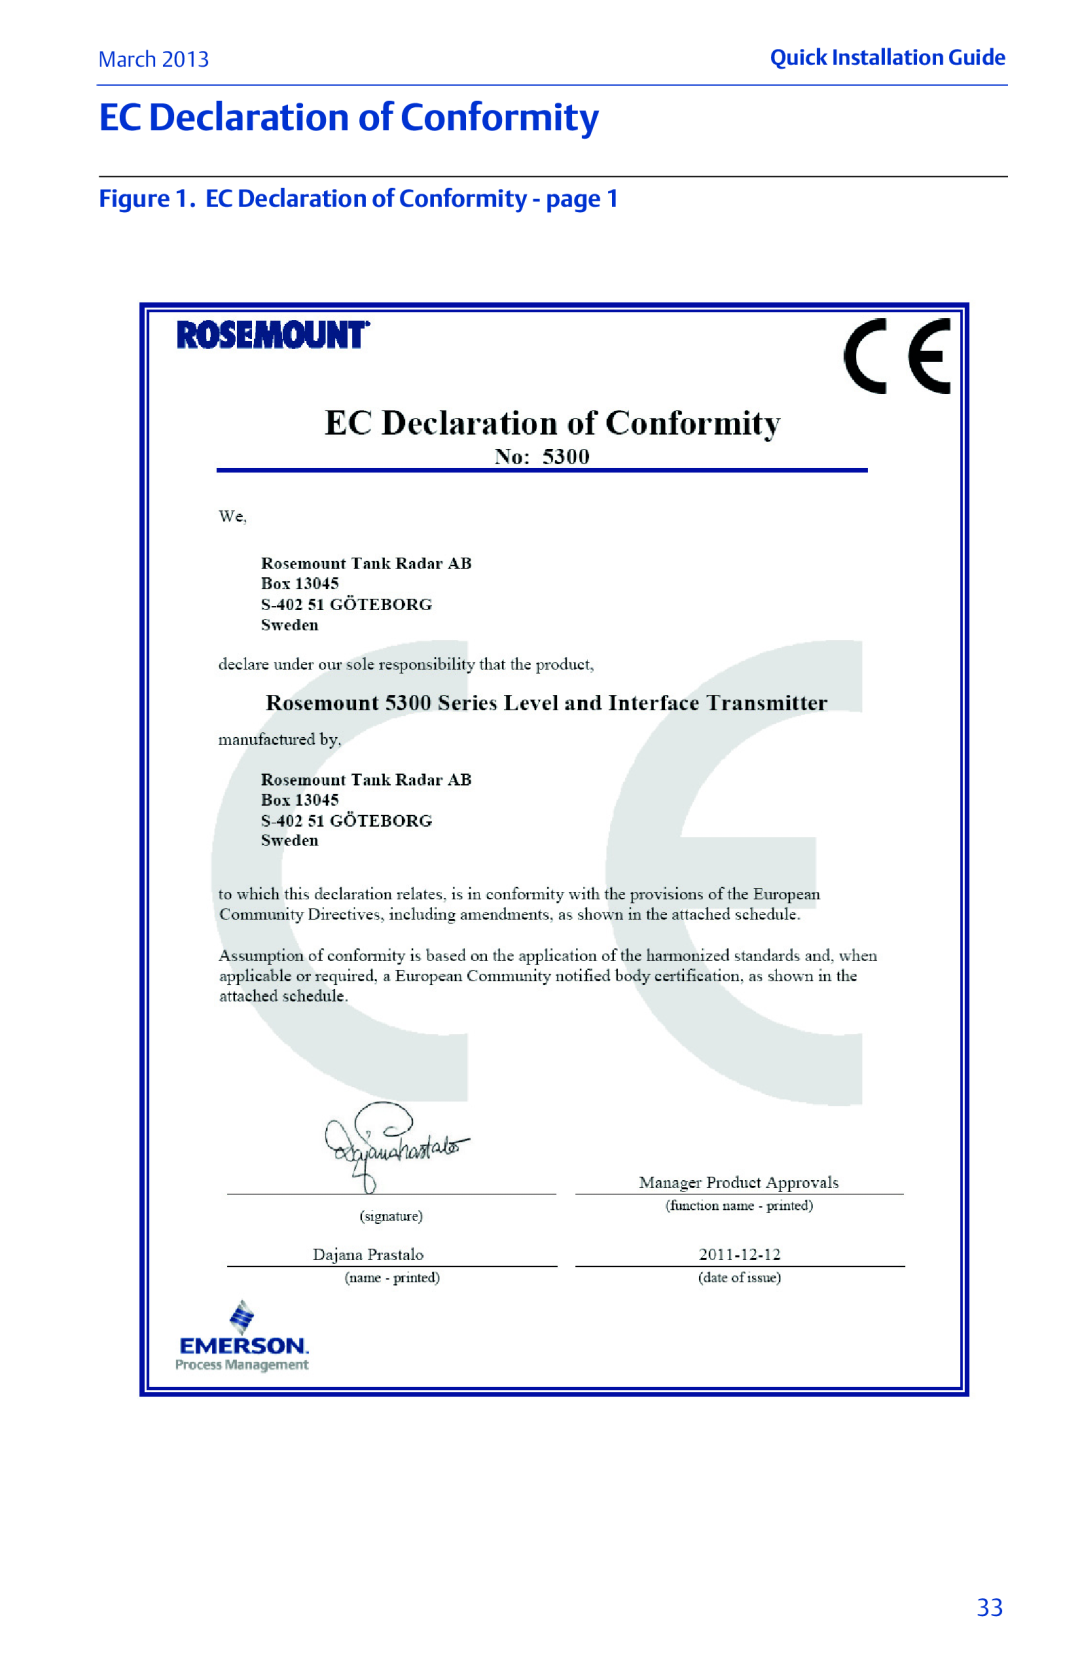 Emerson 00825-0100-4530 Rev EC manual EC Declaration of Conformity - page, March, Quick Installation Guide 